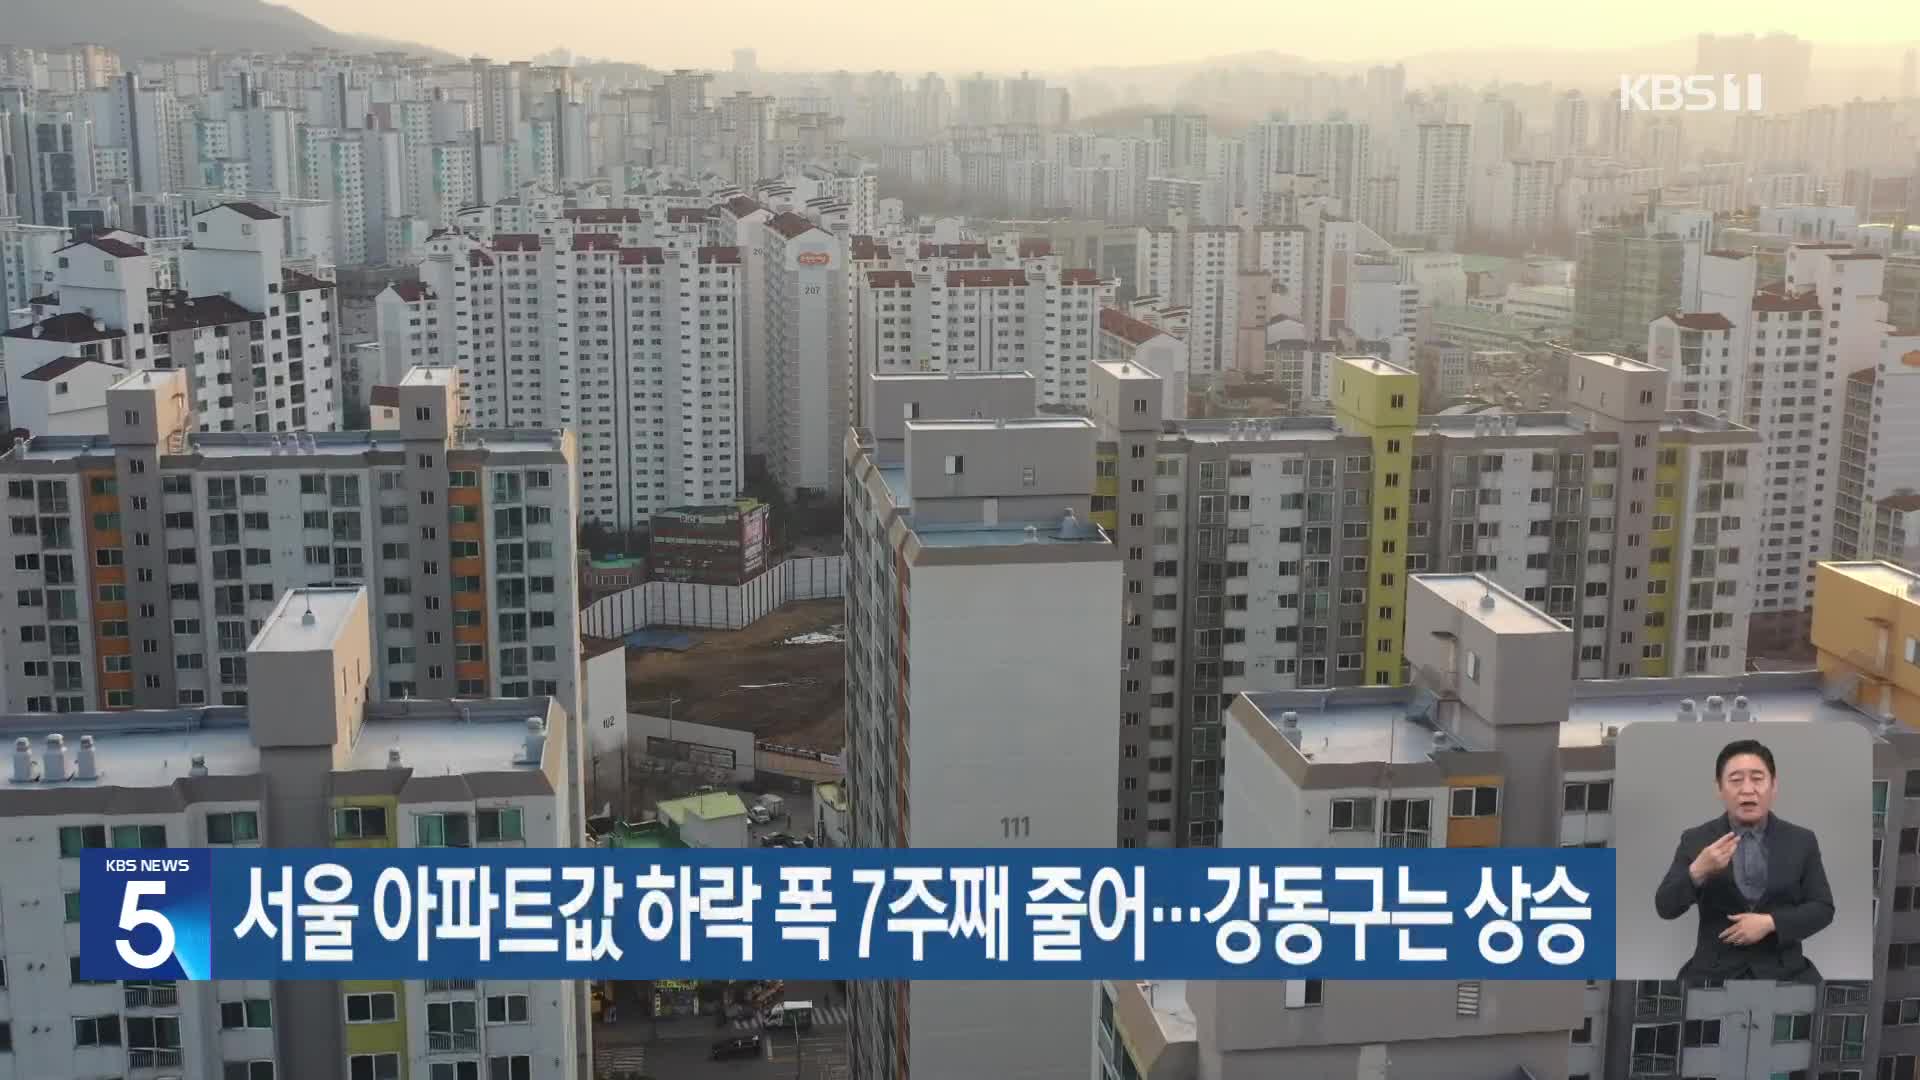 서울 아파트값 하락 폭 7주째 줄어…강동구는 상승